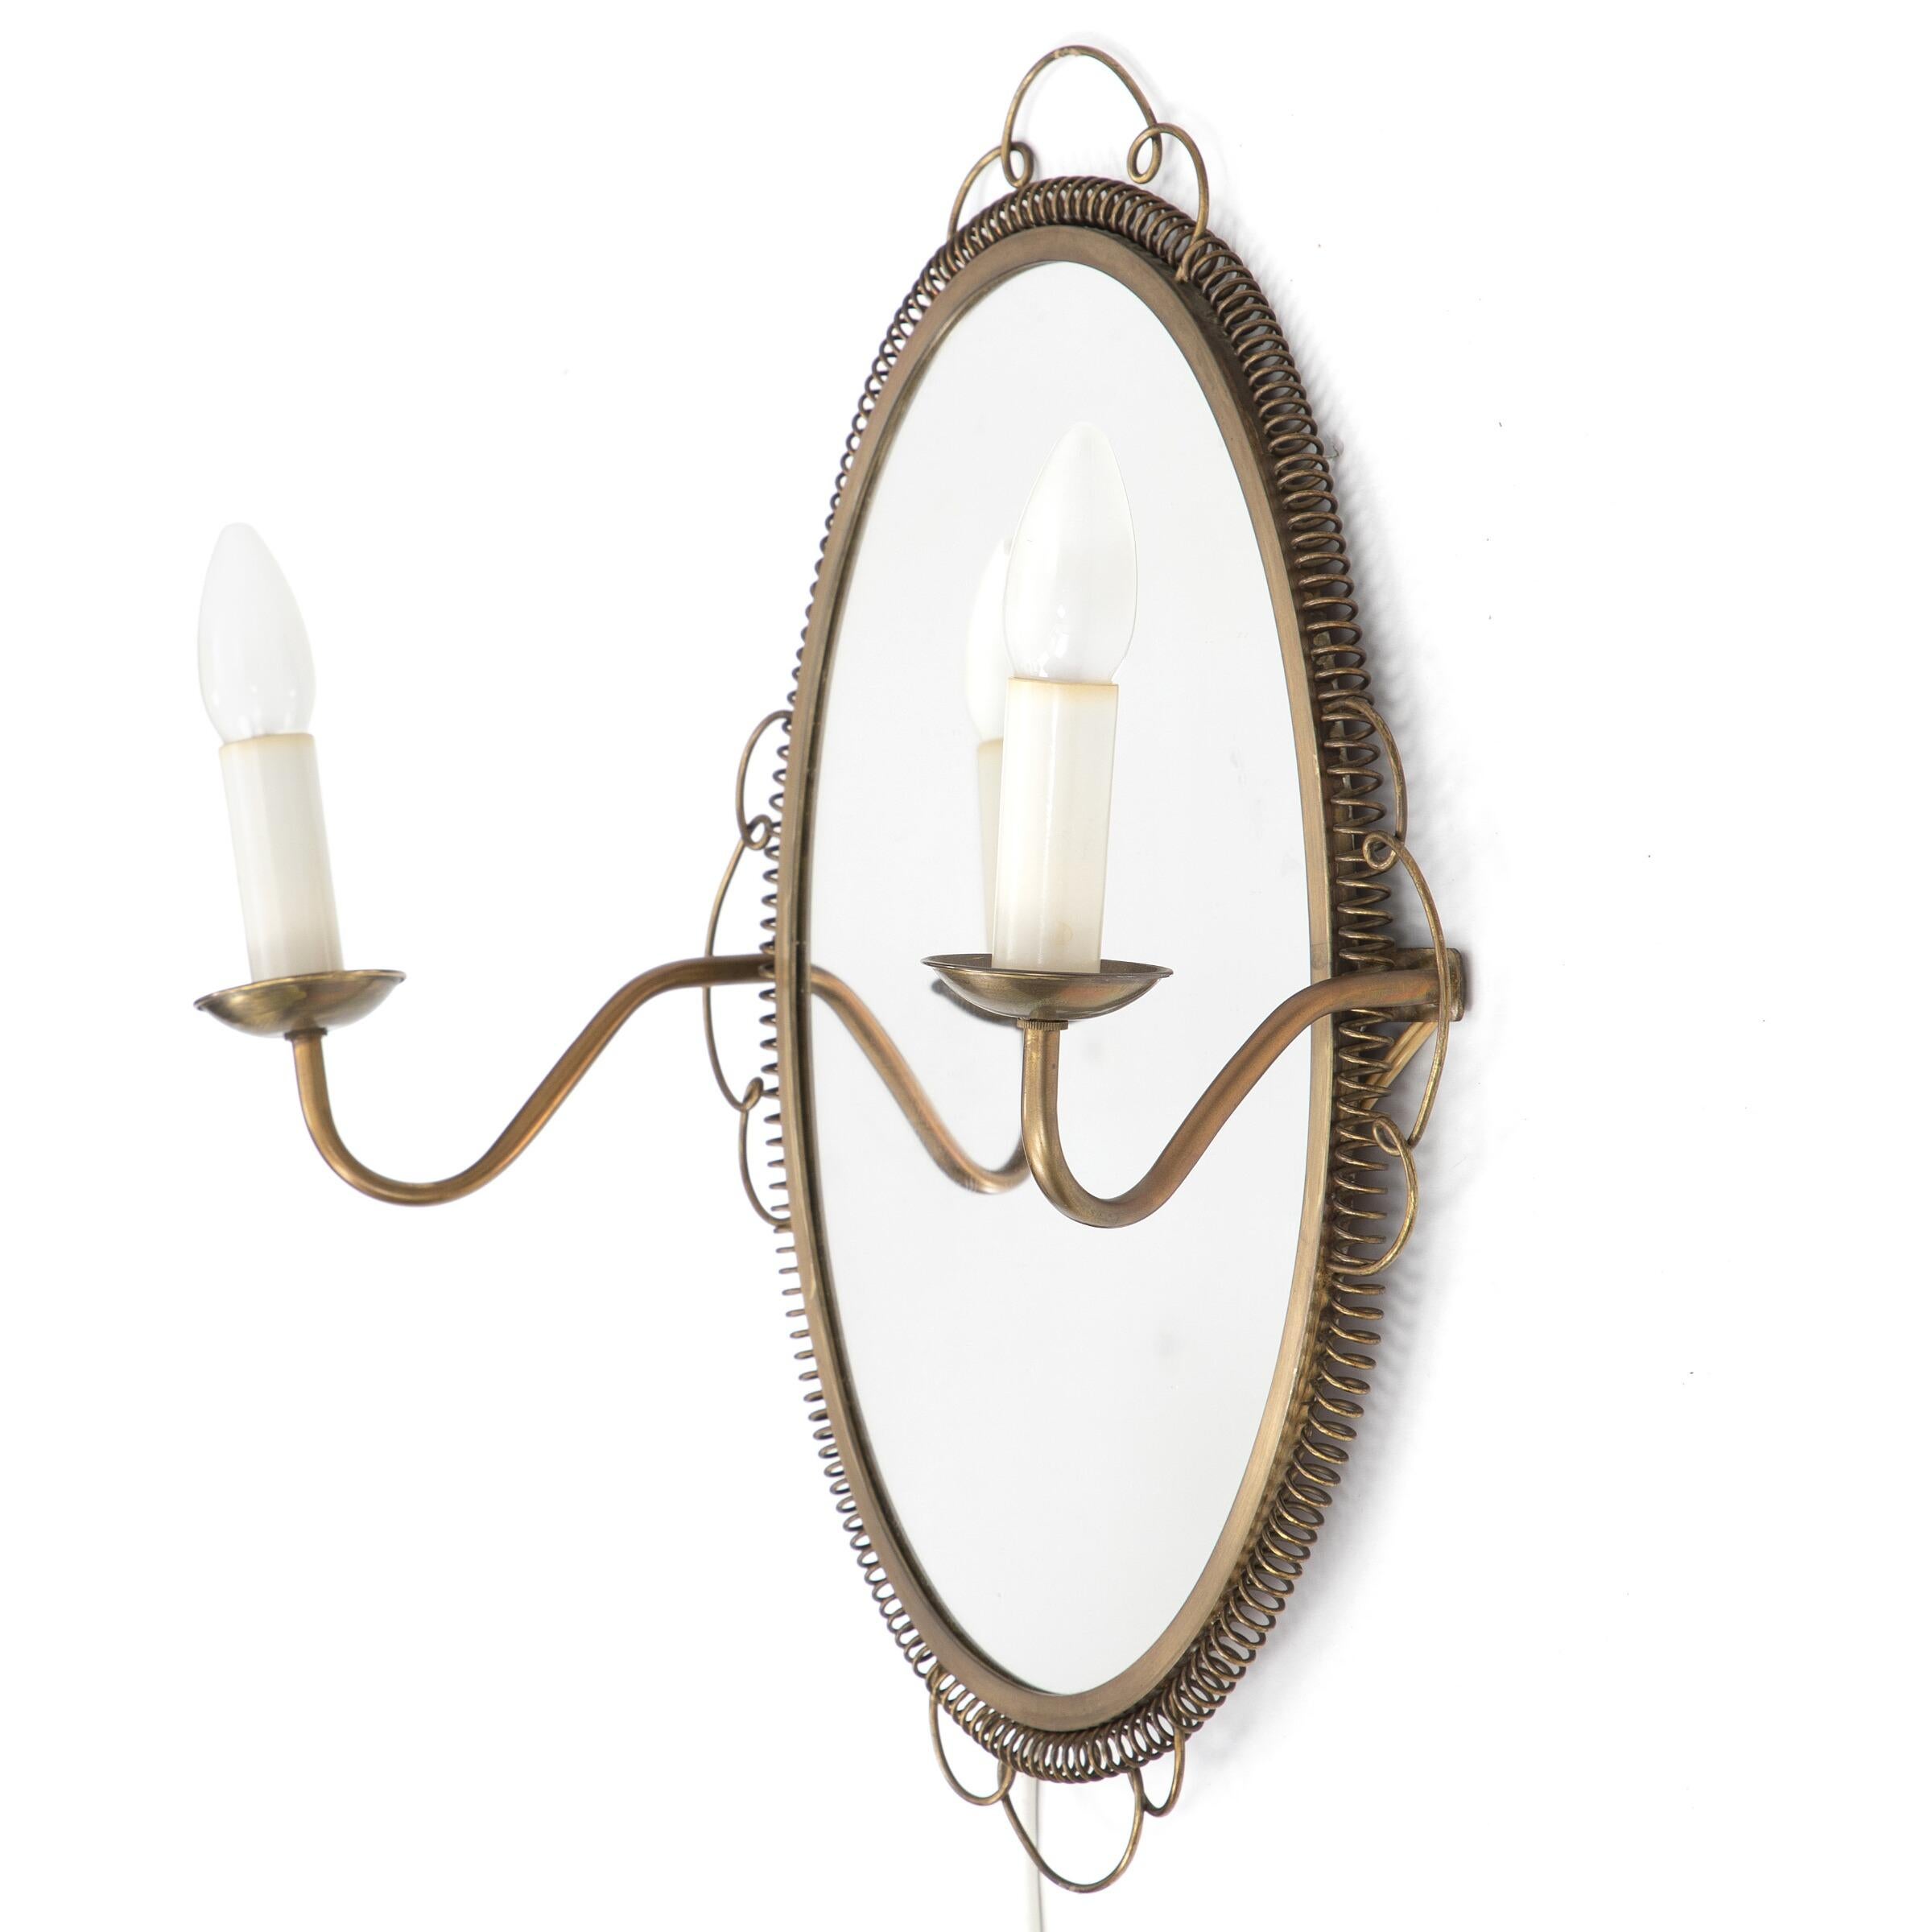 Ovaler Spiegel

Rahmen aus Messing

Twist-Detail am Rahmen

Zwei Wandleuchter

Schweden 1950er Jahre.